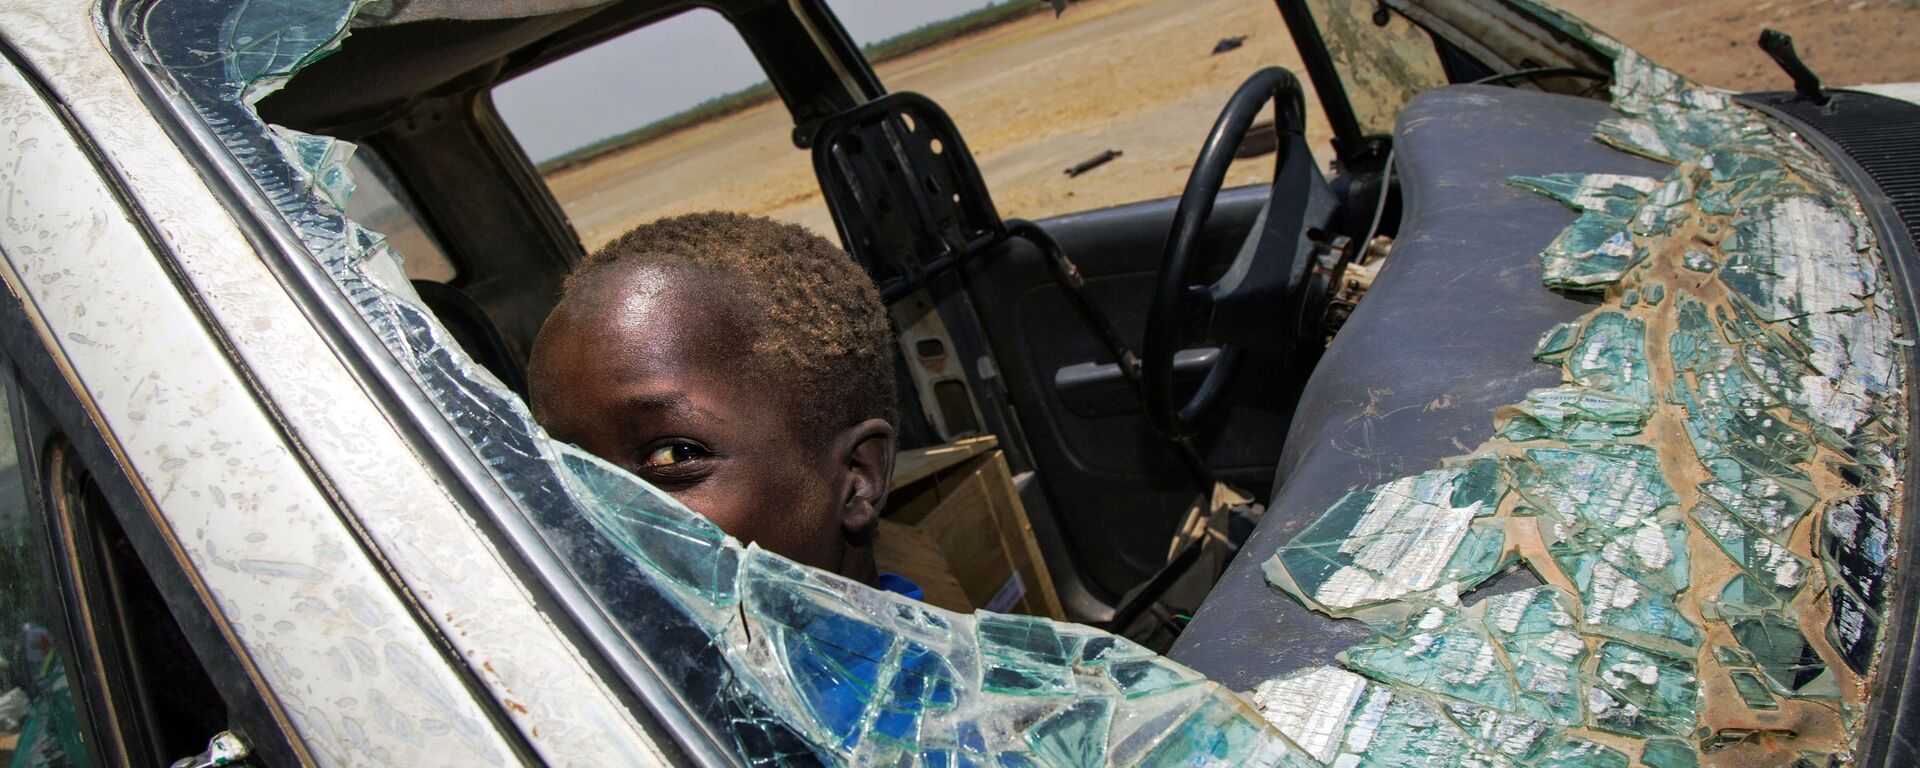 طفل داخل سيارة محطمة نتيجة اشتباكات دارت القوات المسلحة في جنوب السودان، 11 أبريل/ نيسان 2017 - سبوتنيك عربي, 1920, 17.07.2022